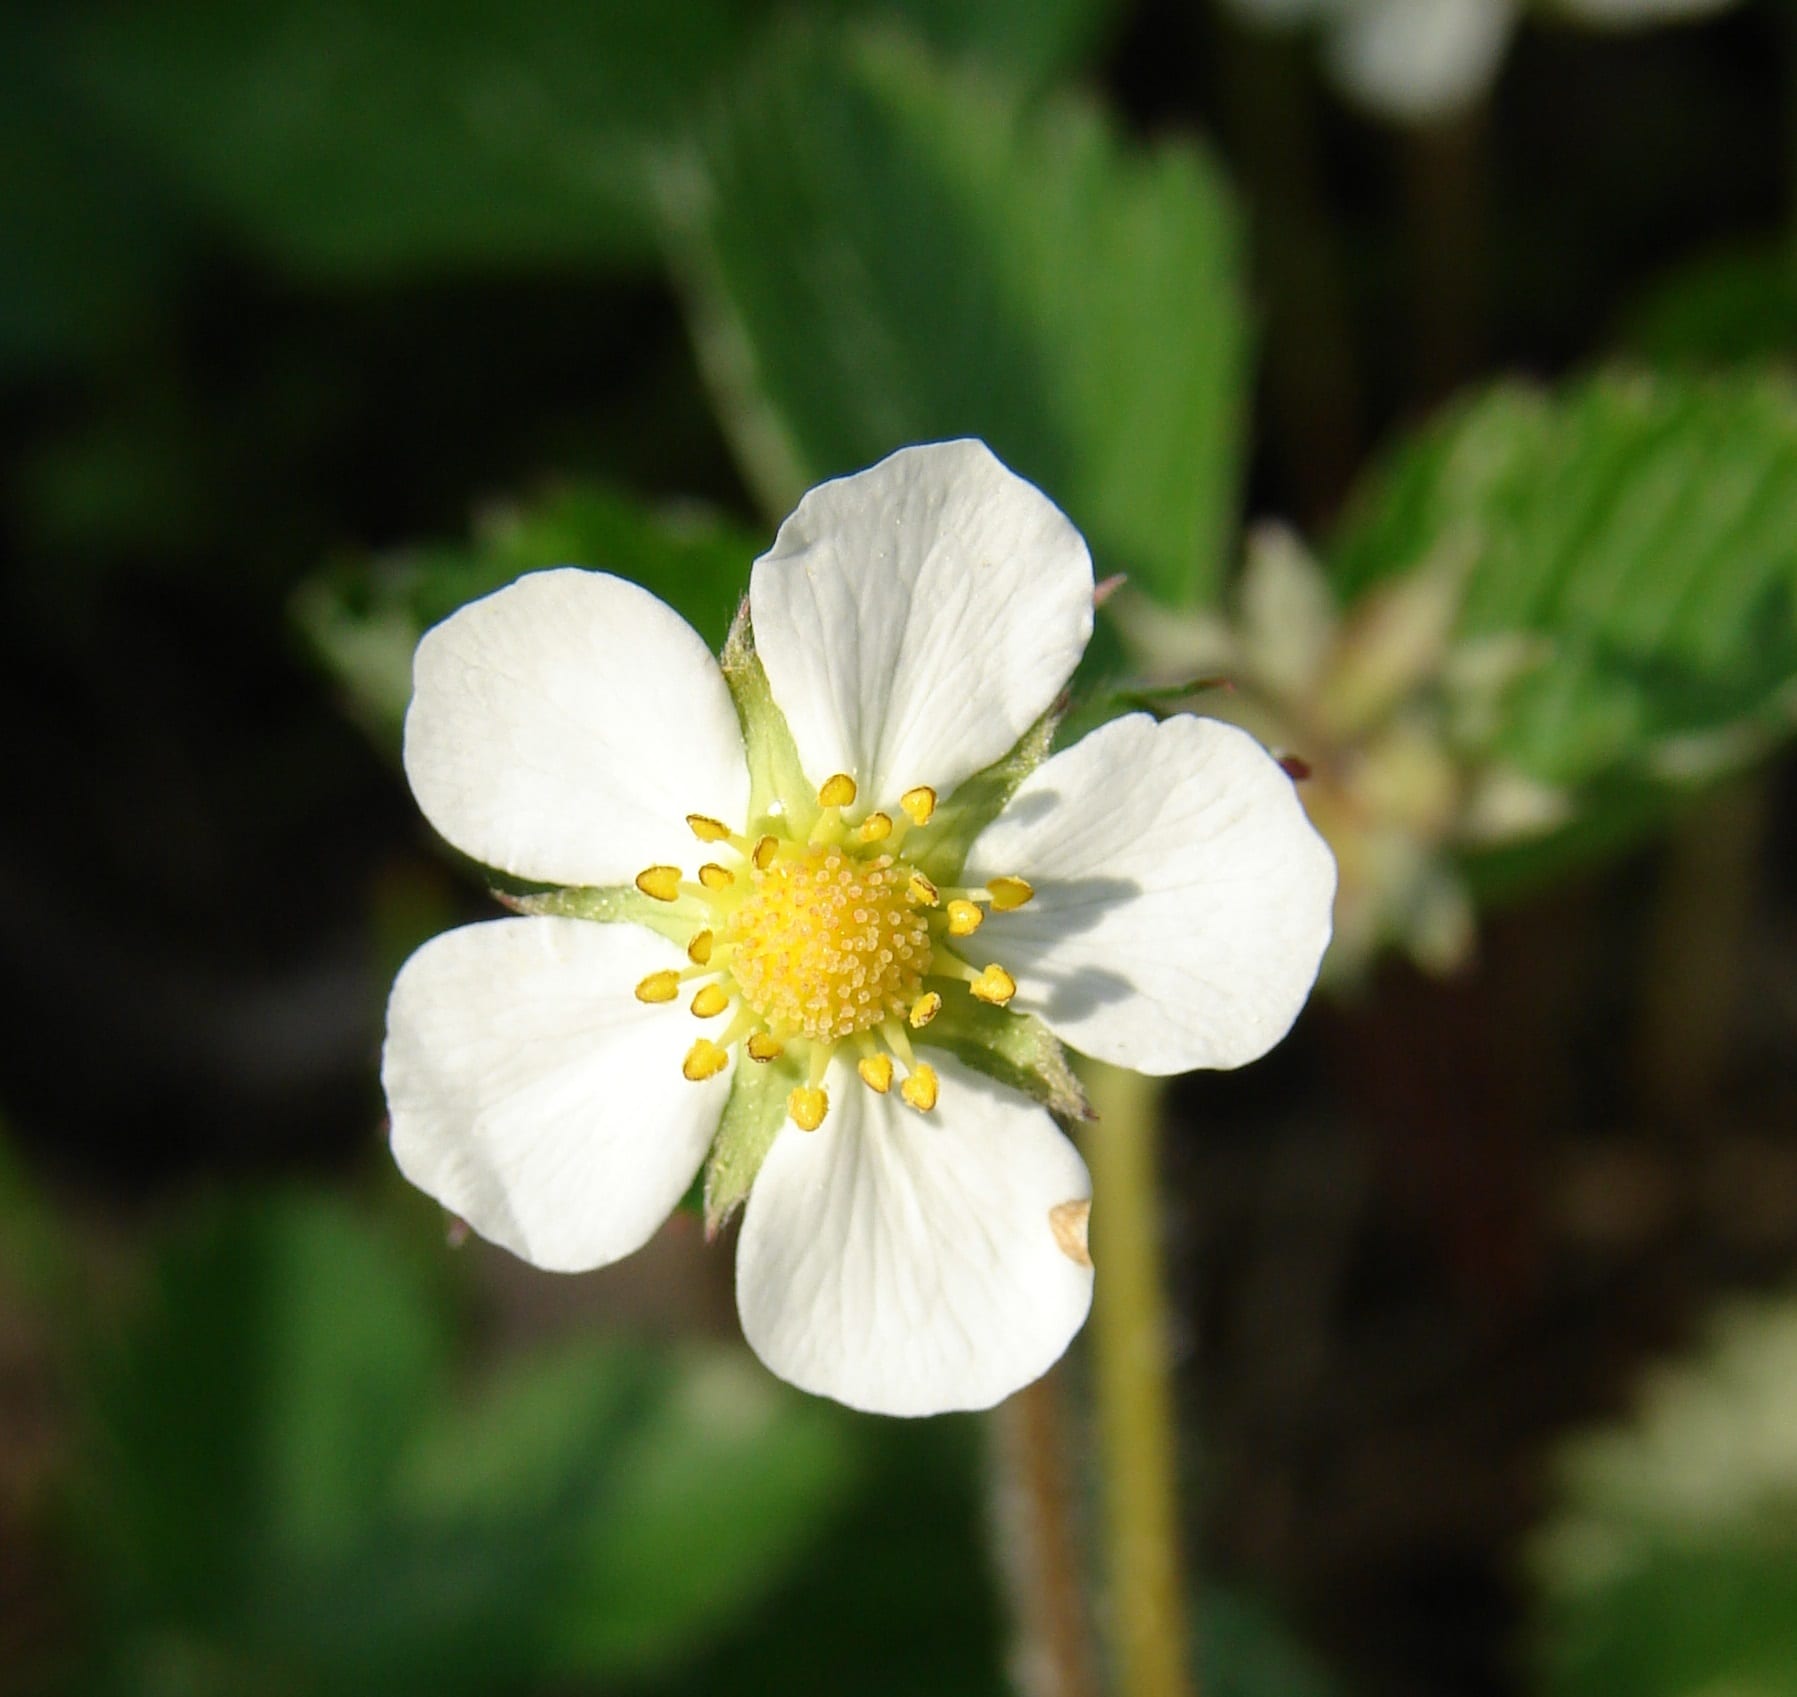 La fleur blanche du fraisier des bois